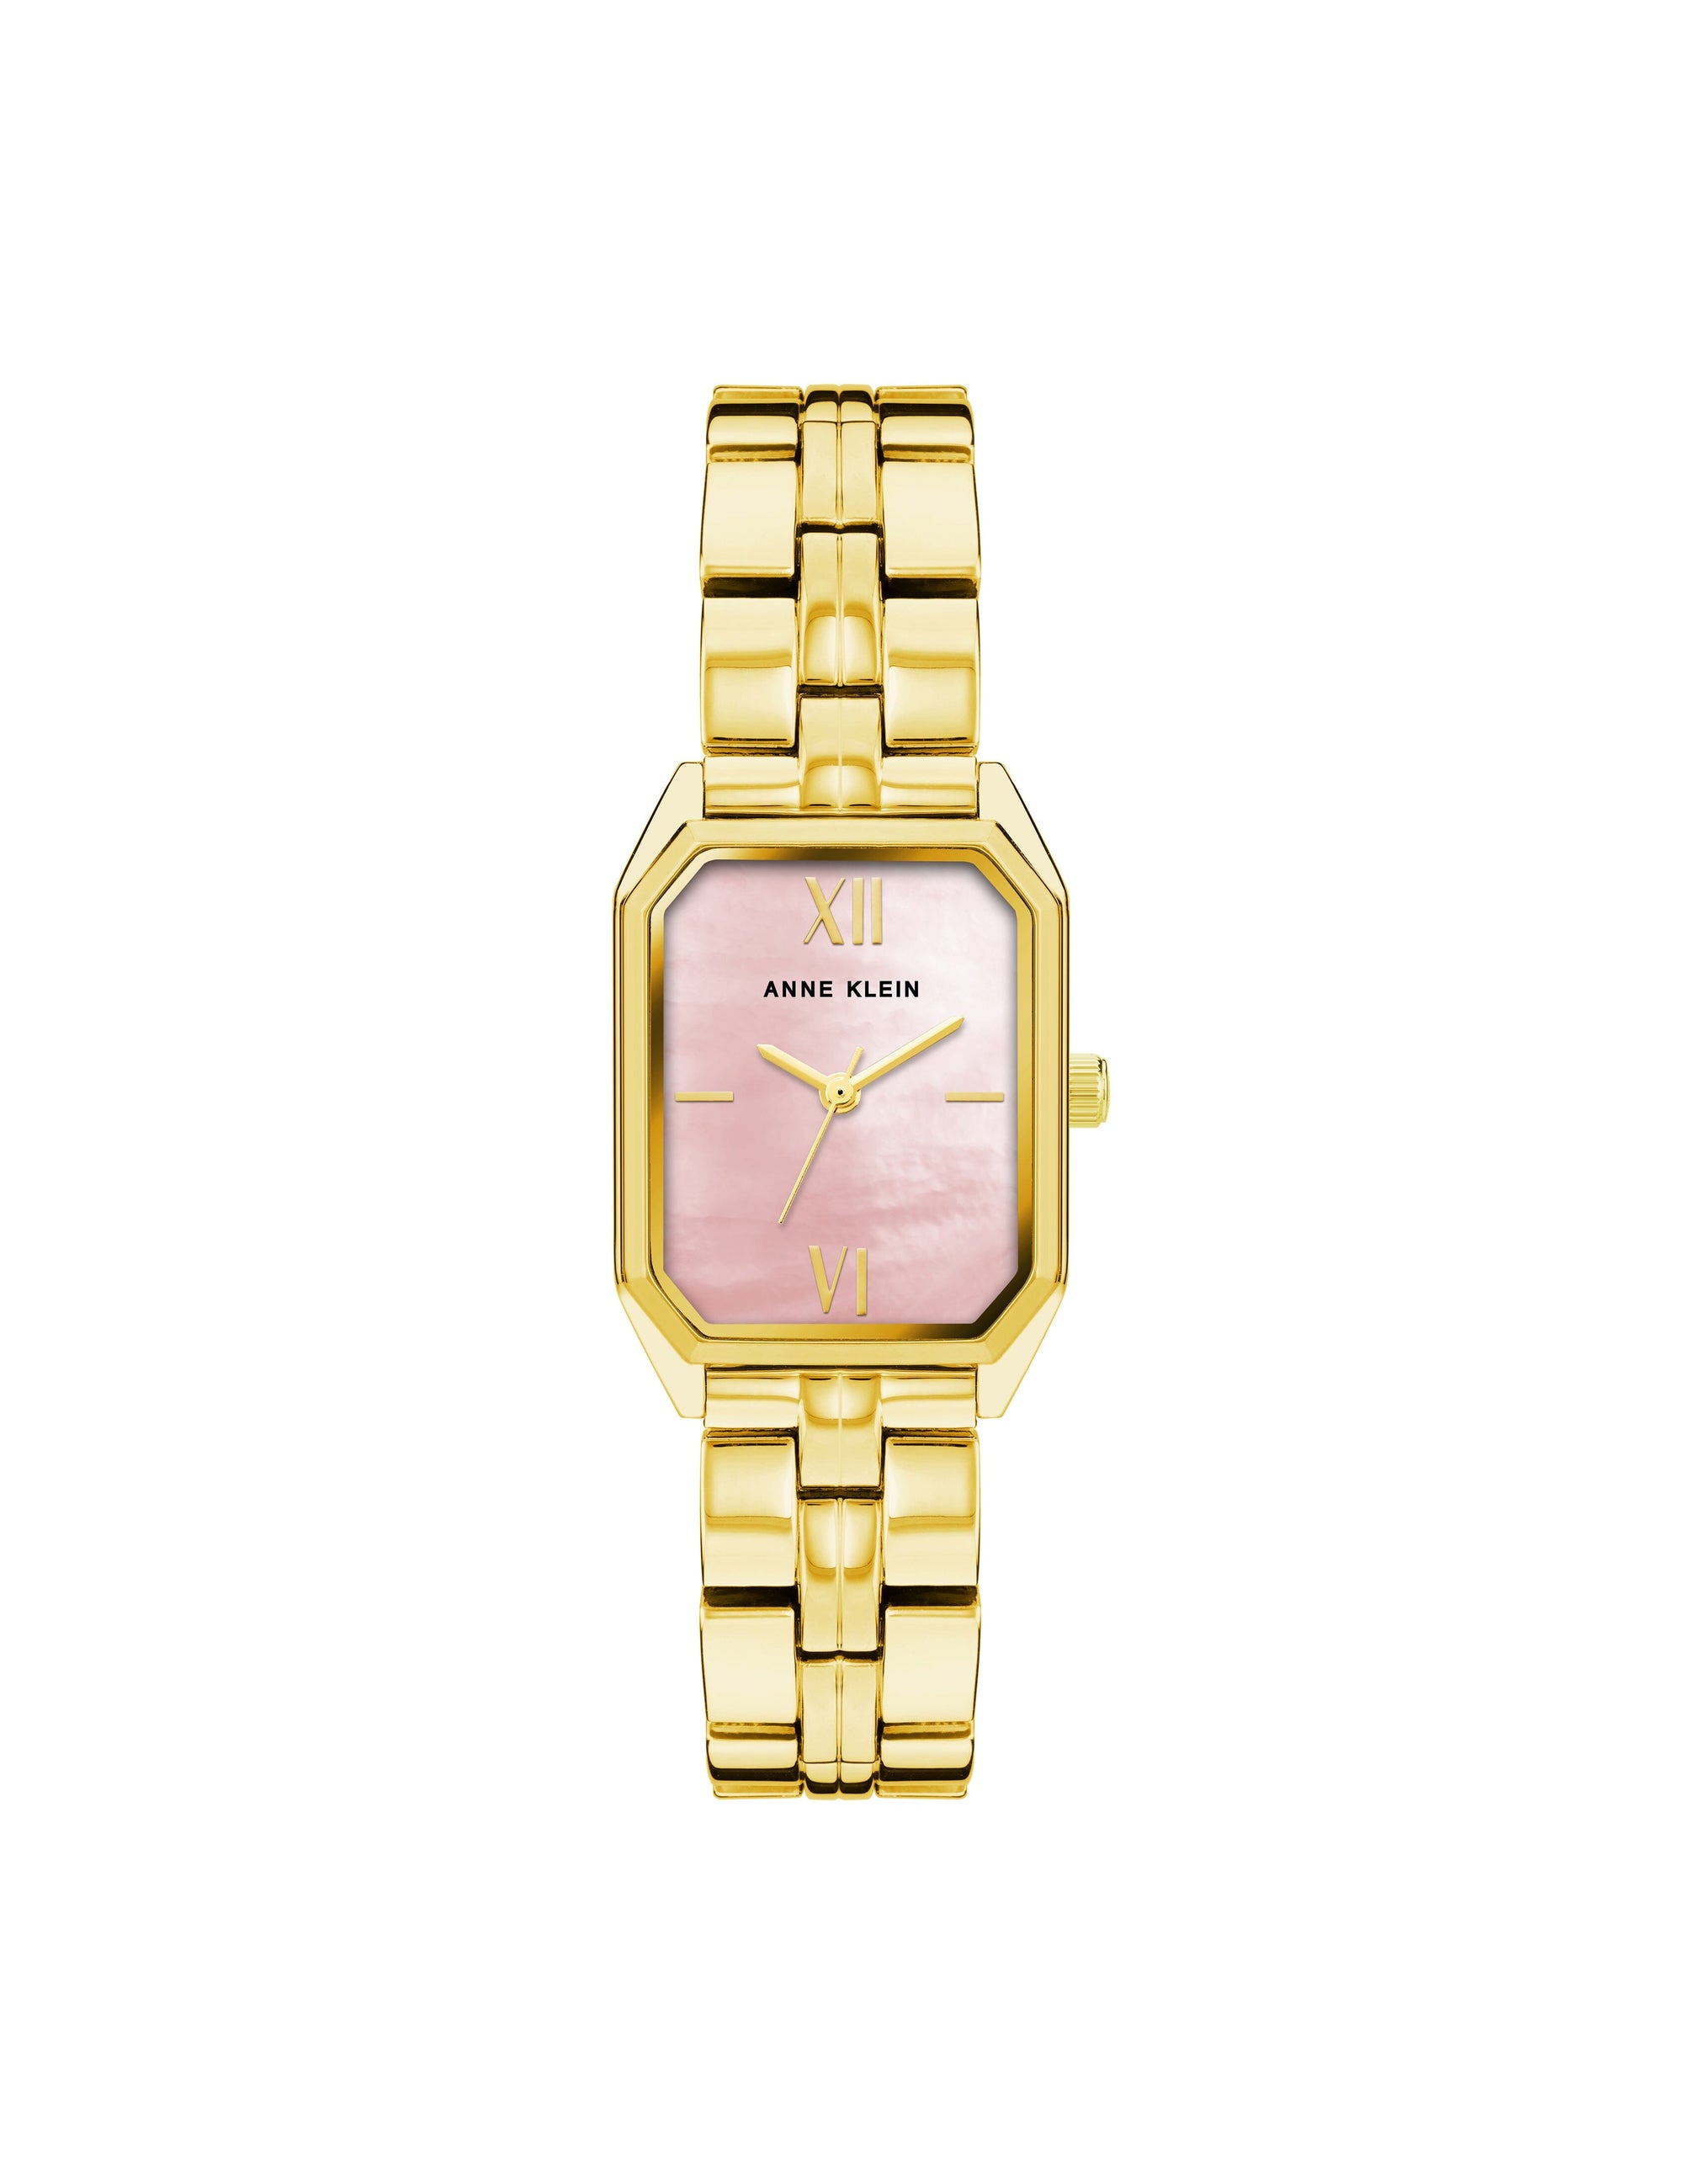 Anne Klein Women's Premium Crystal Accented Gold-Tone Charm Bracelet Watch,  86702375158 | eBay